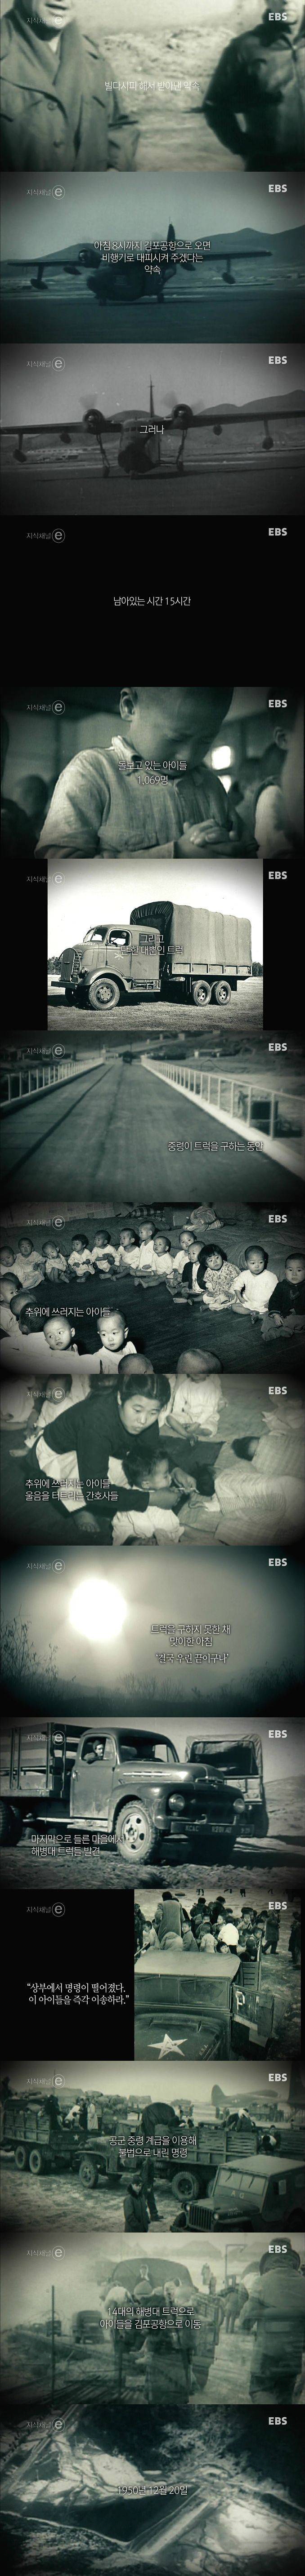 1059명의 아이들을 구해낸 한국전쟁 유모차 공수작전 | 인스티즈